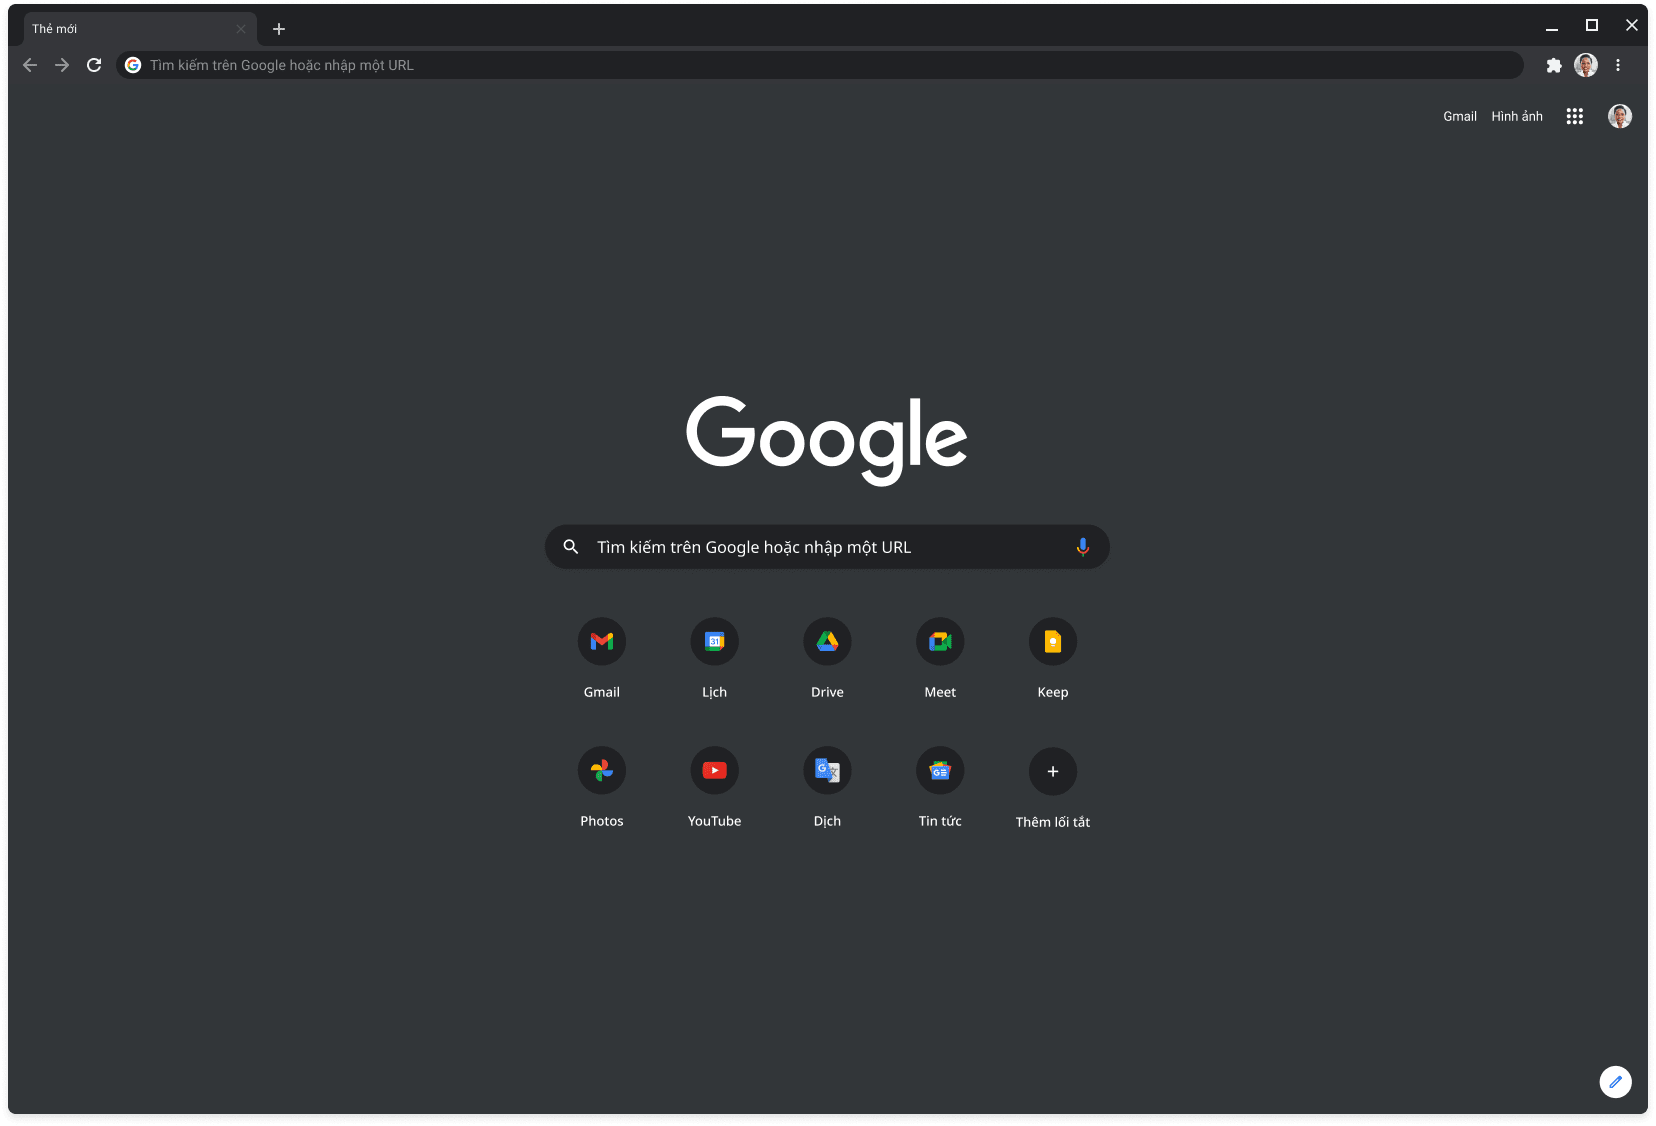 Cửa sổ trình duyệt Chrome ở chế độ tối, đang hiển thị Google.com.